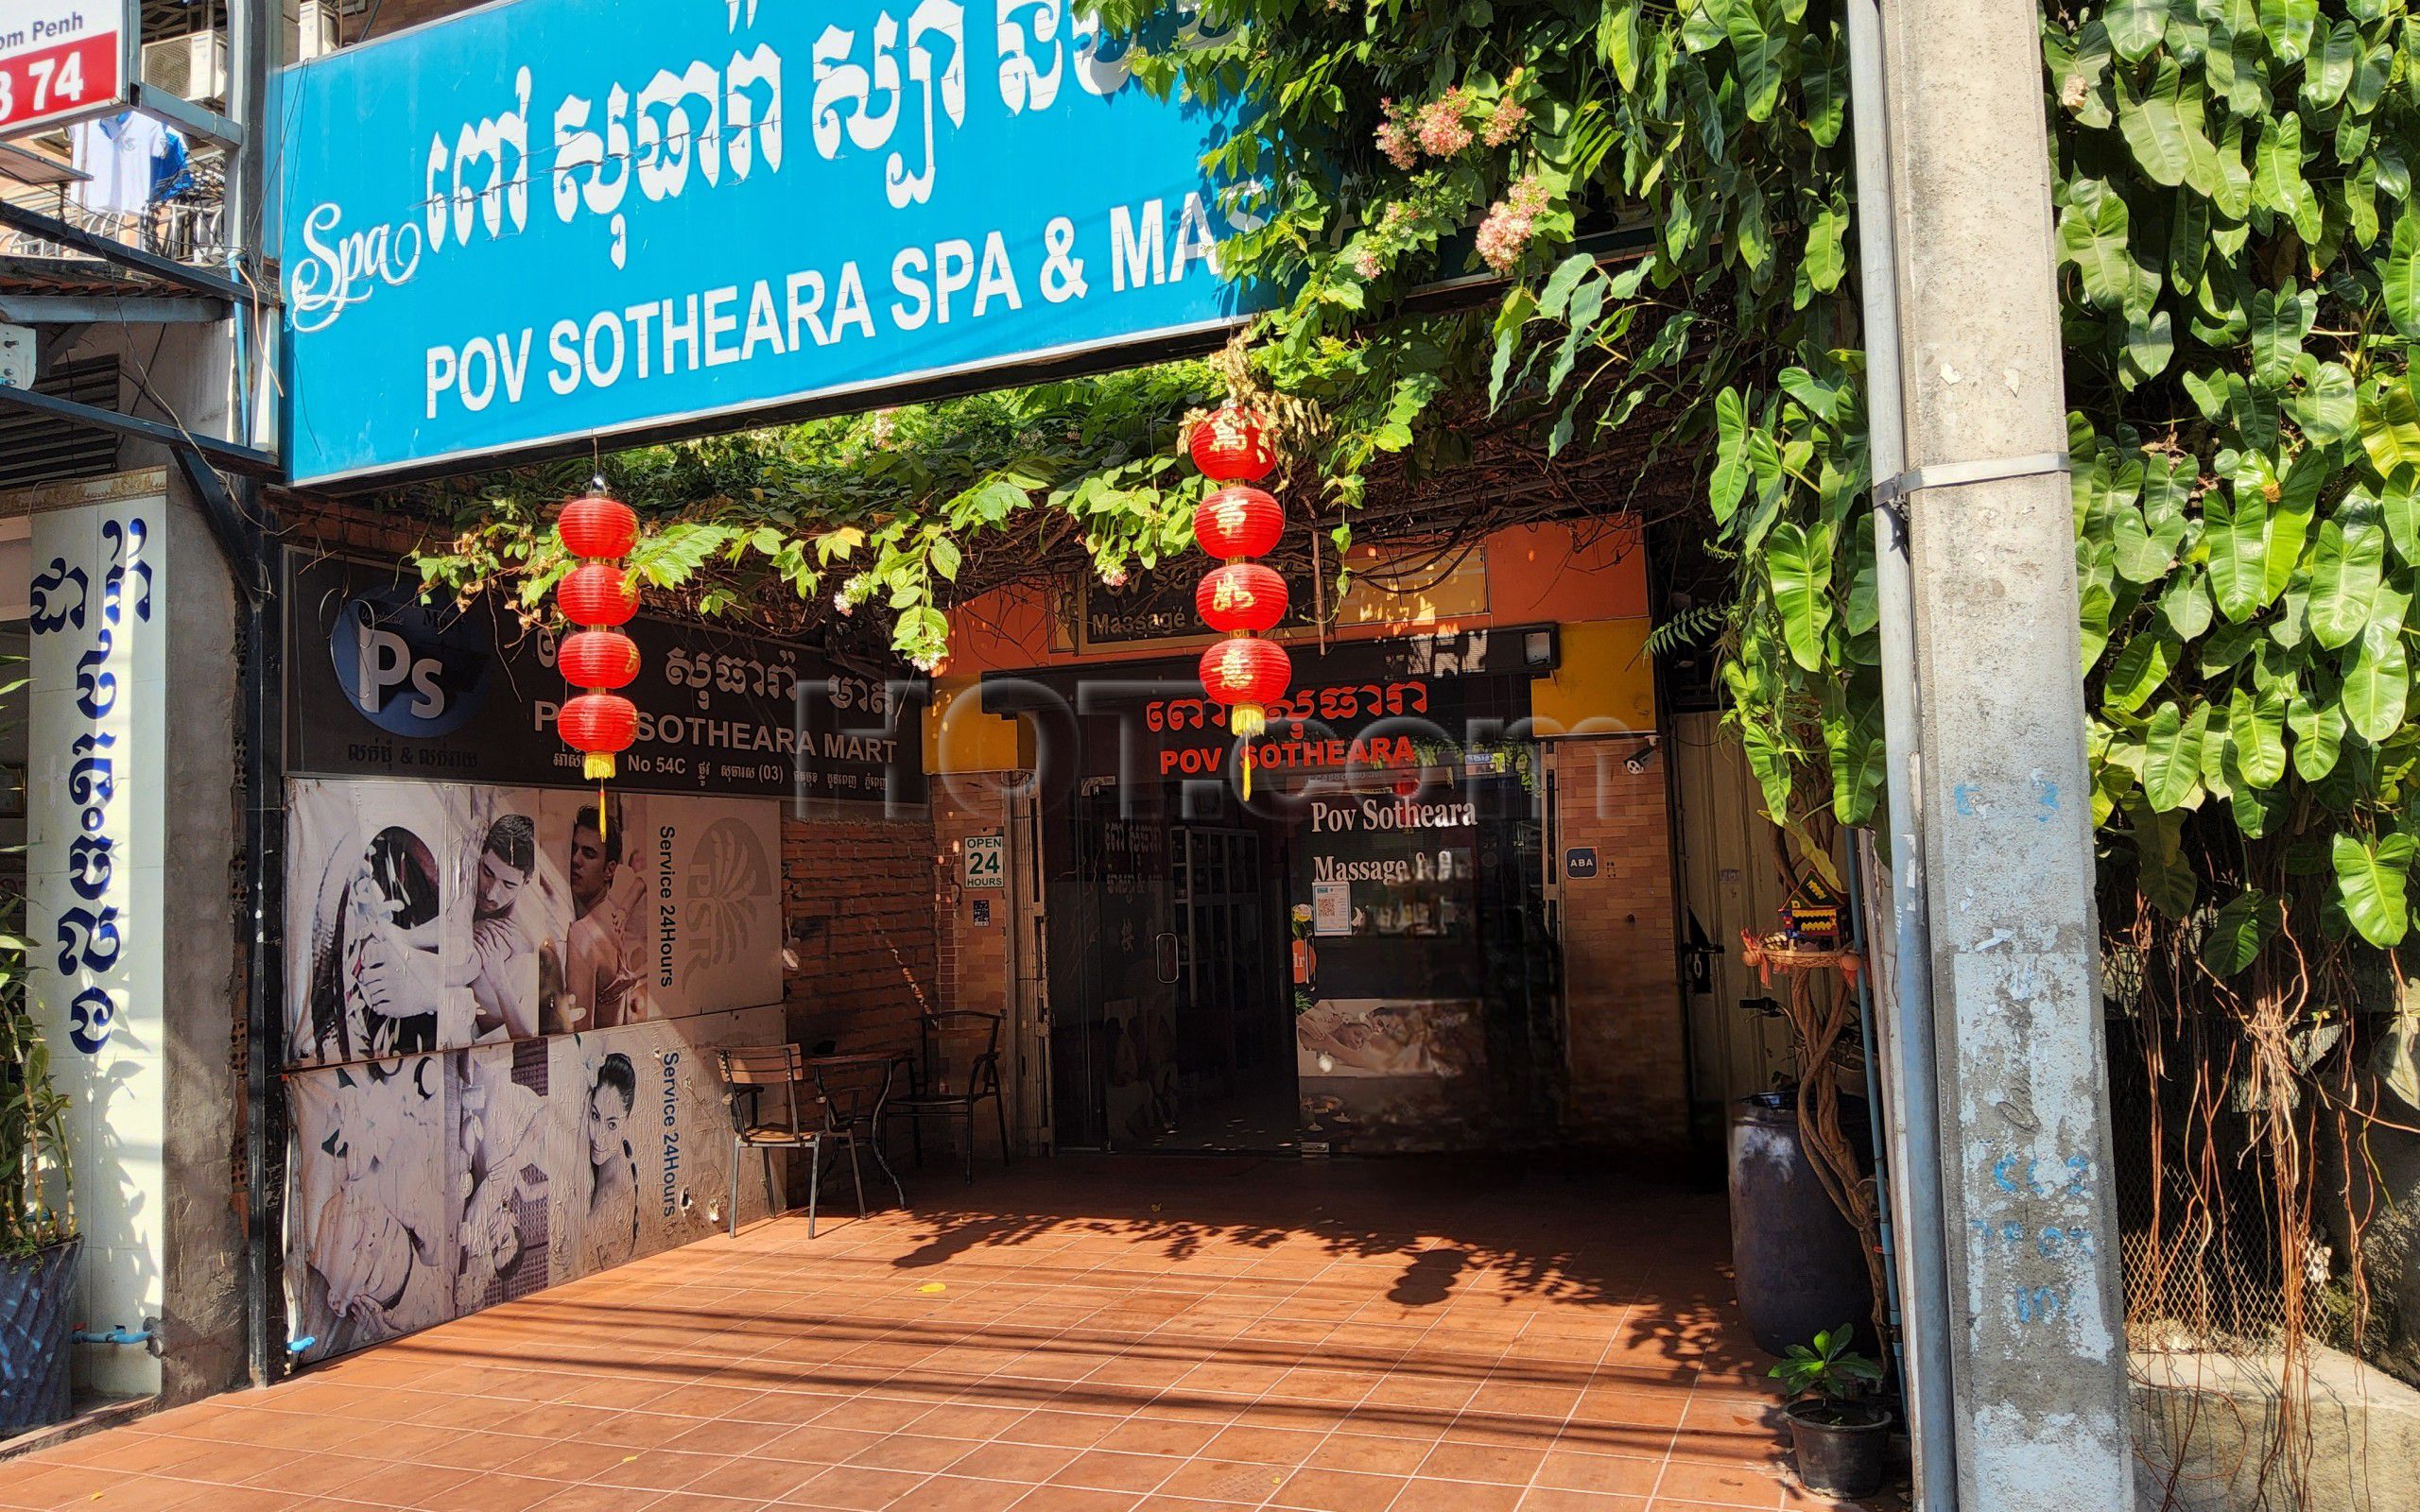 Phnom Penh, Cambodia Pov Sotheara Massage & Spa